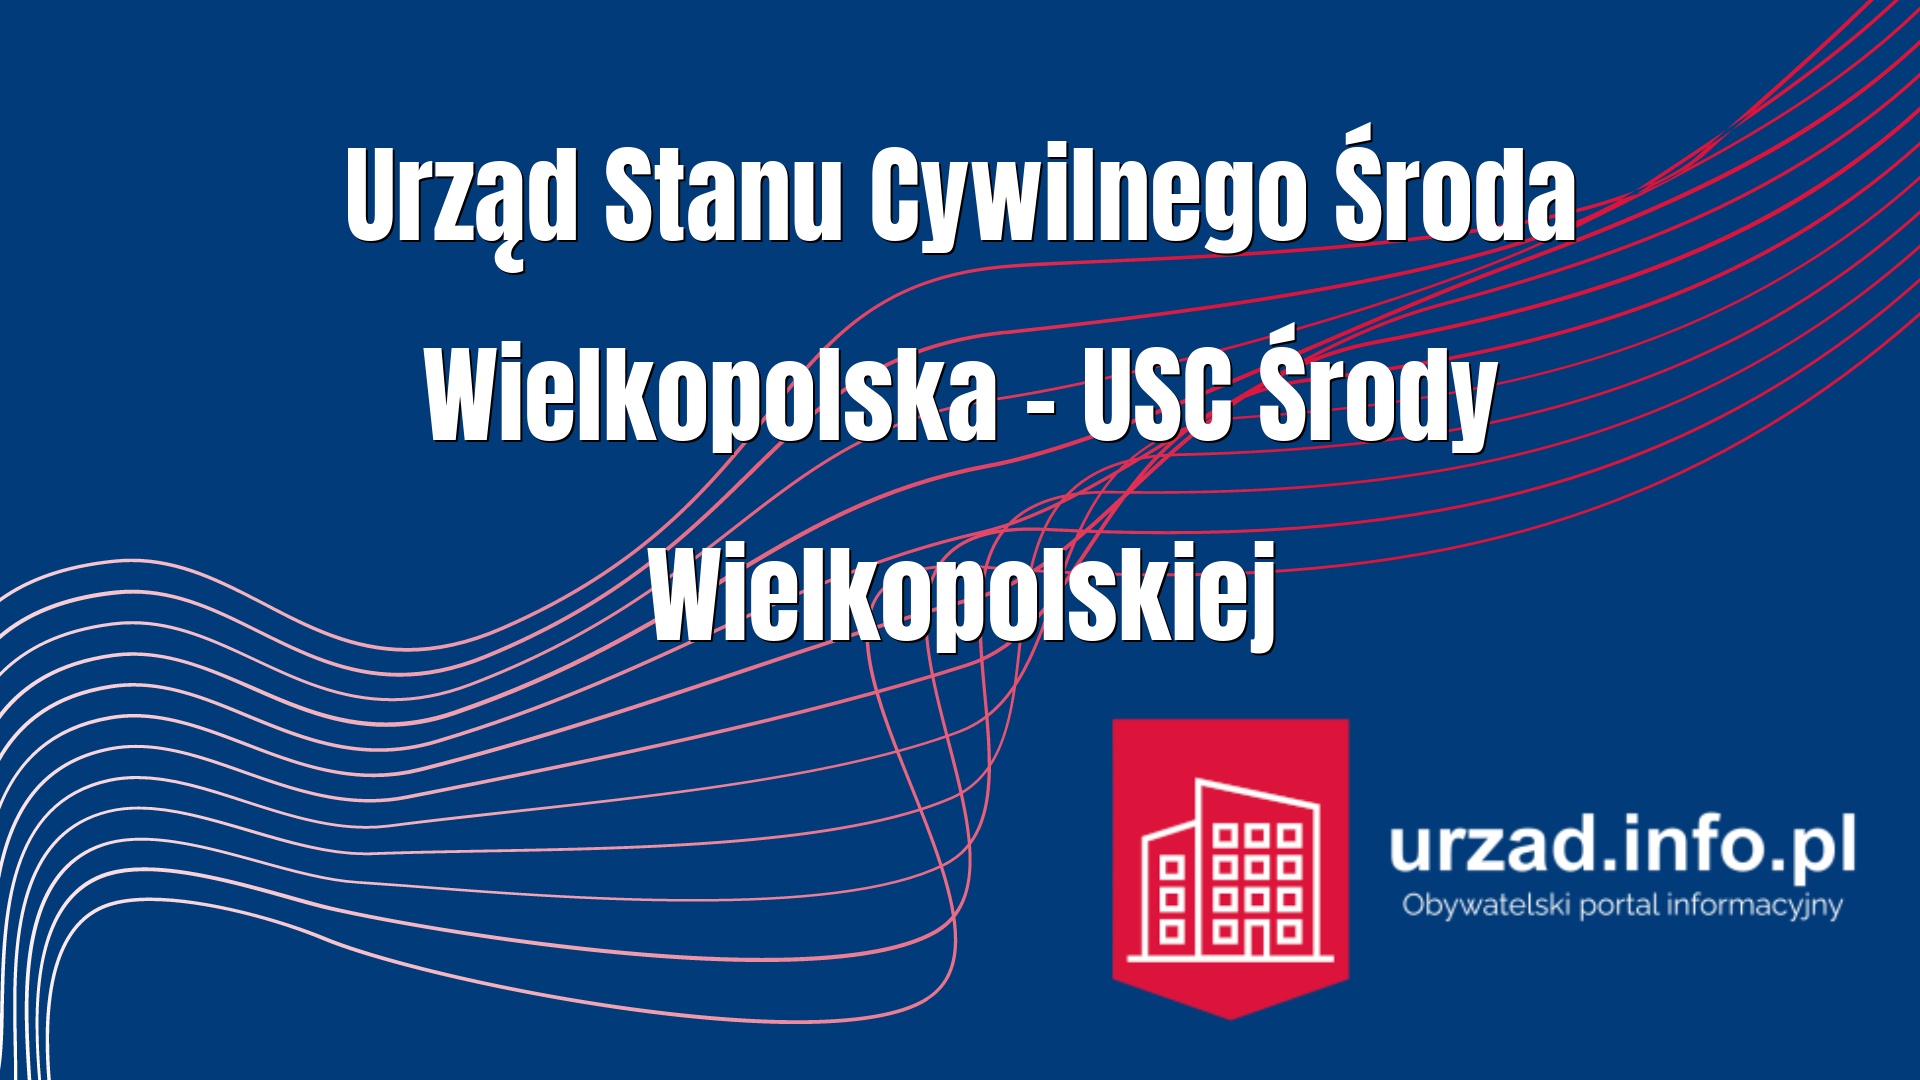 Urząd Stanu Cywilnego Środa Wielkopolska – USC Środy Wielkopolskiej